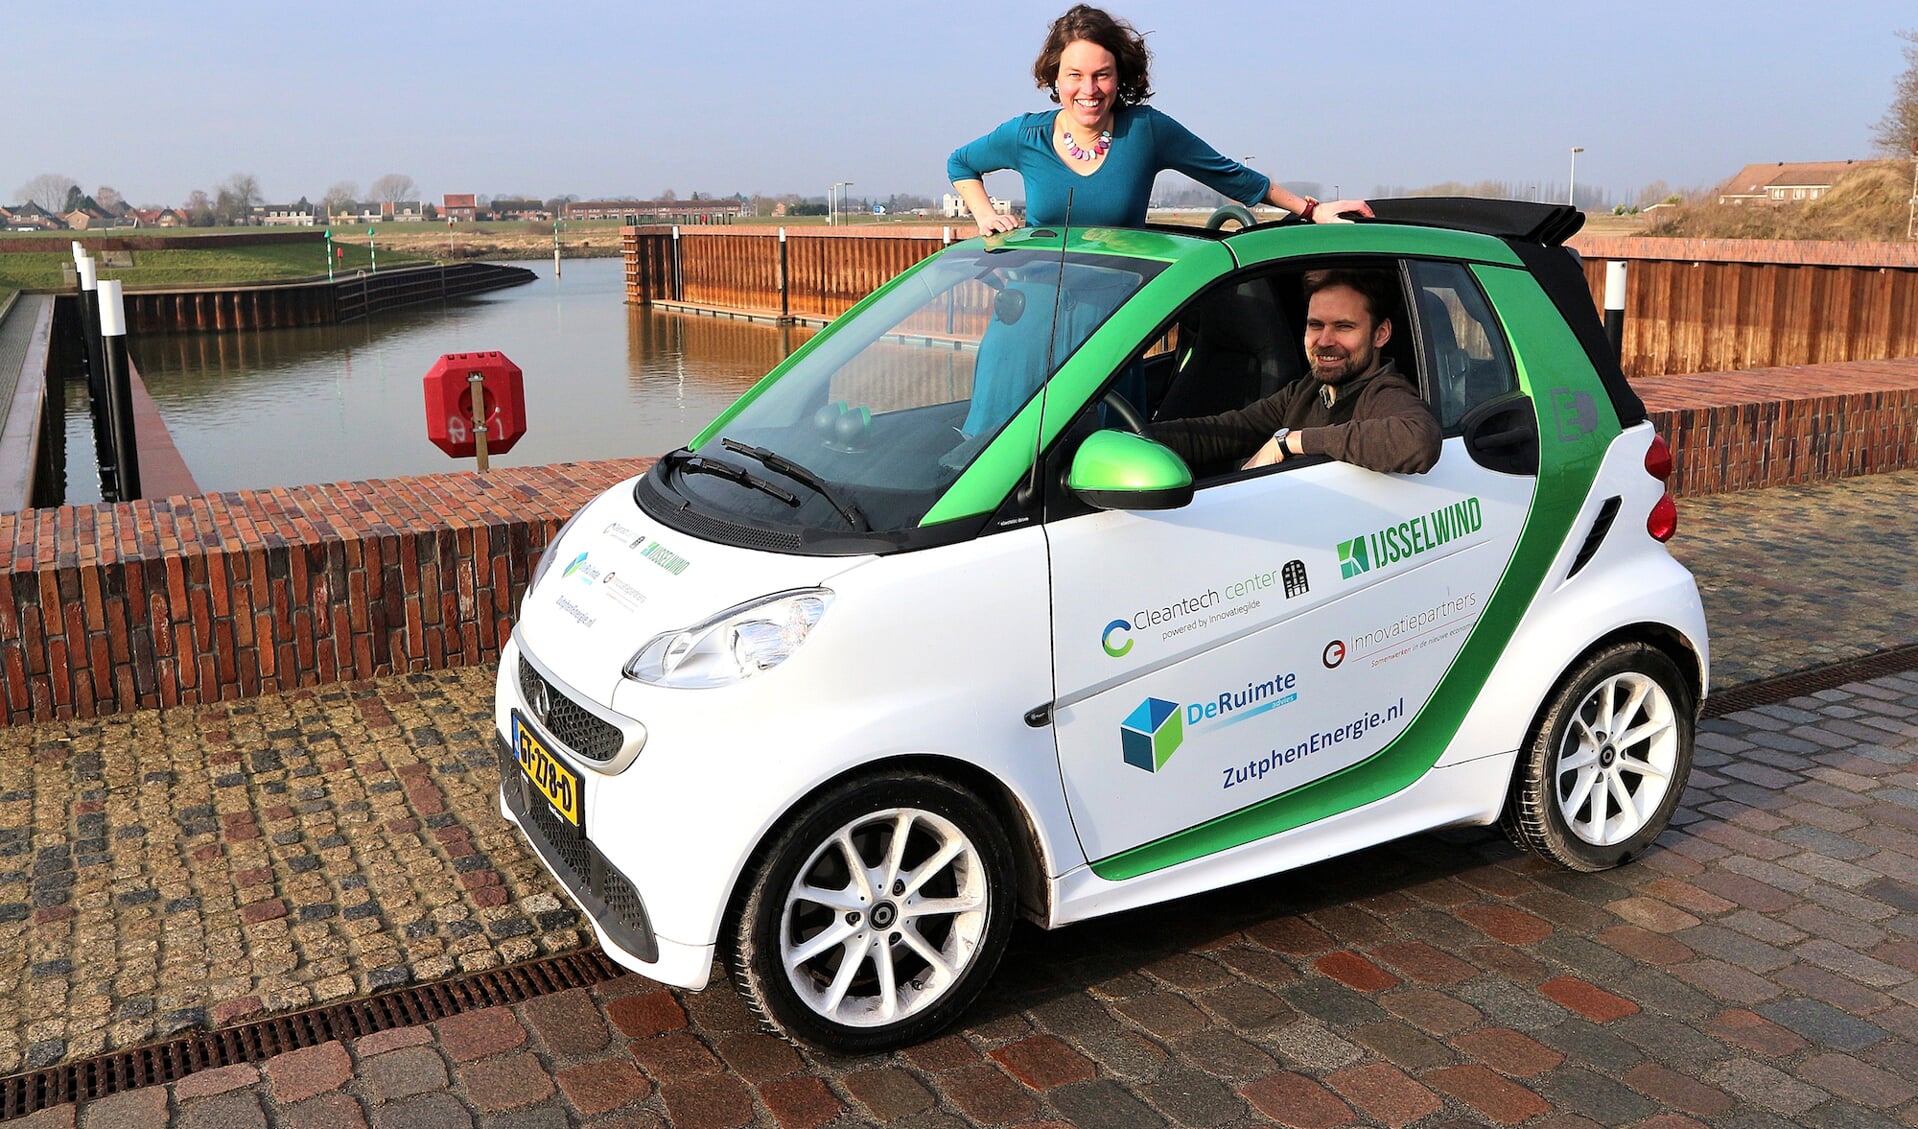 Nieuwe klanten krijgen een gratis dagdeel rijden in de Elektrip auto van ZutphenEnergie. Foto: PR